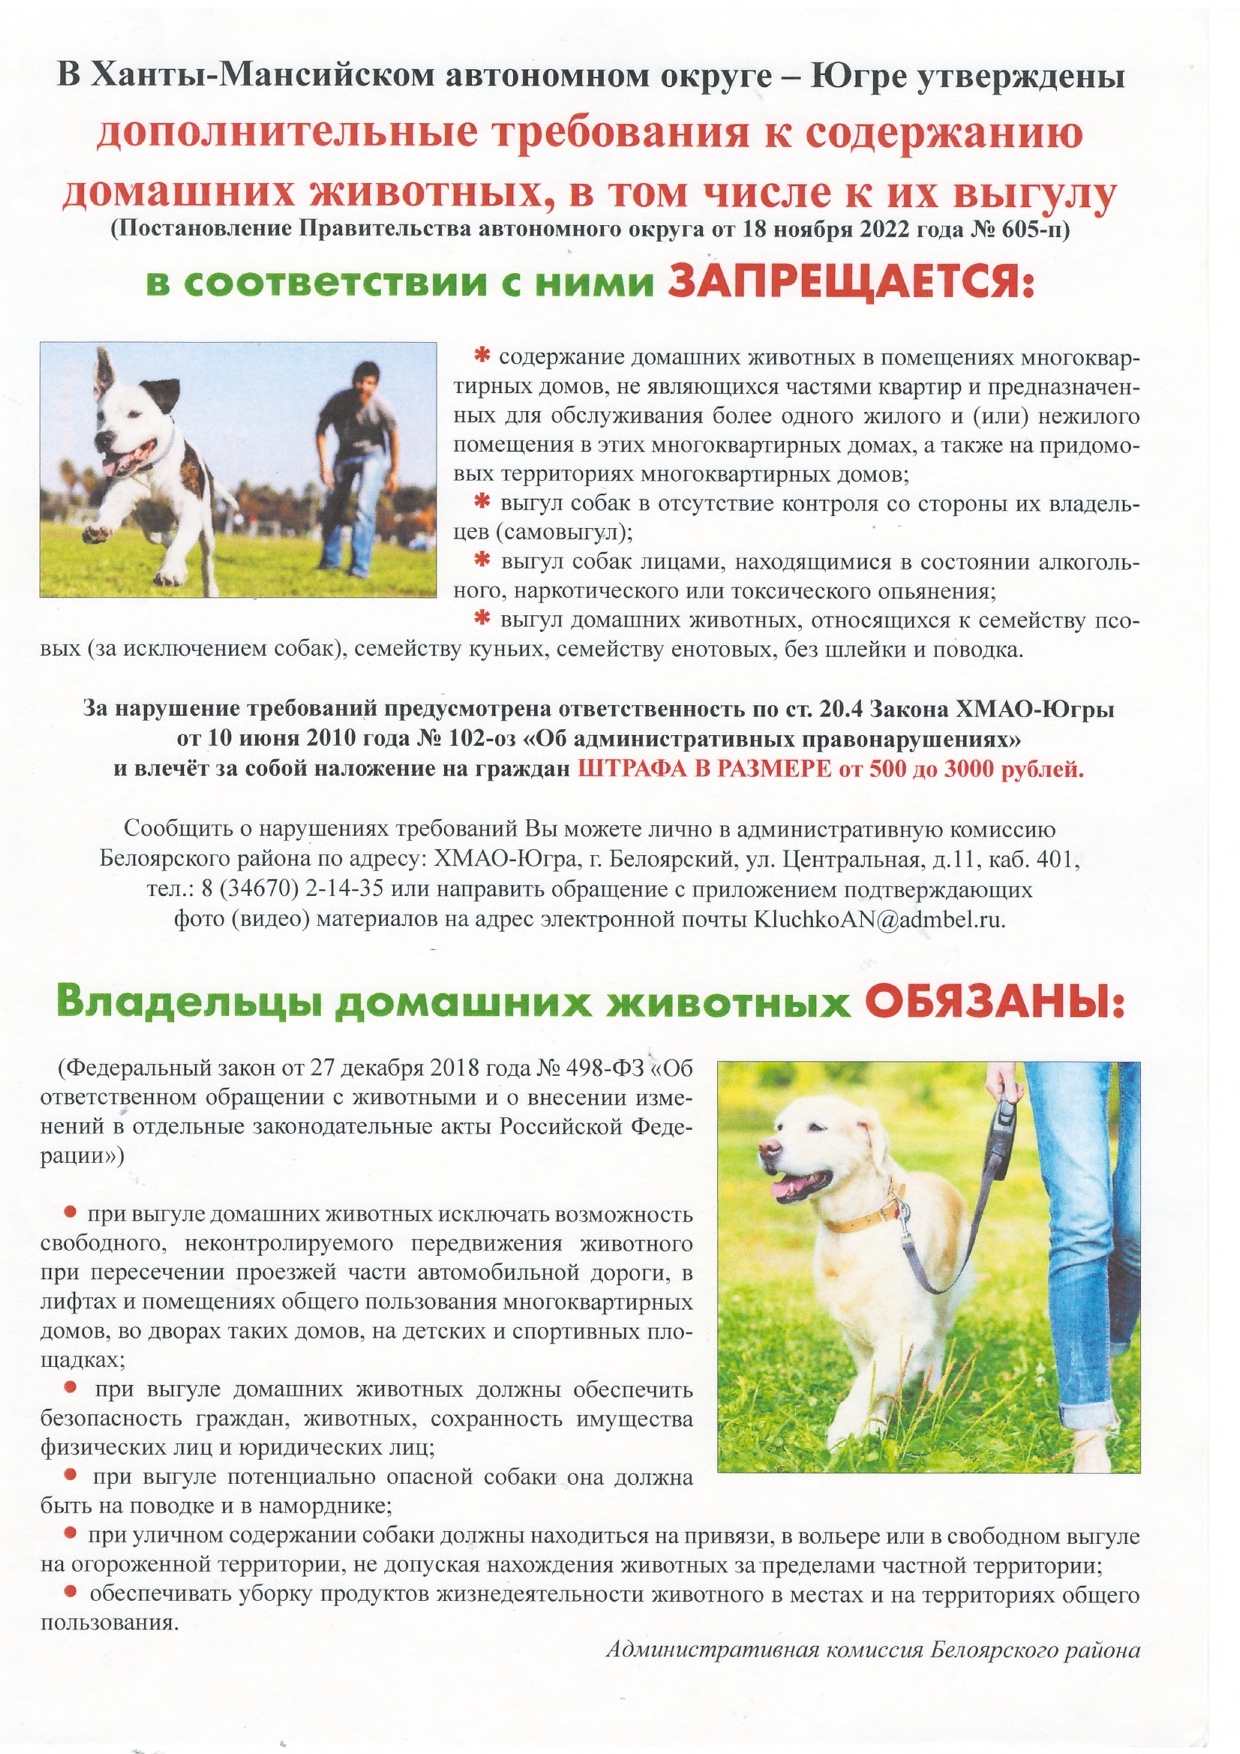 Доп.требования к содержанию домашних животных.FR12_page-0001.jpg